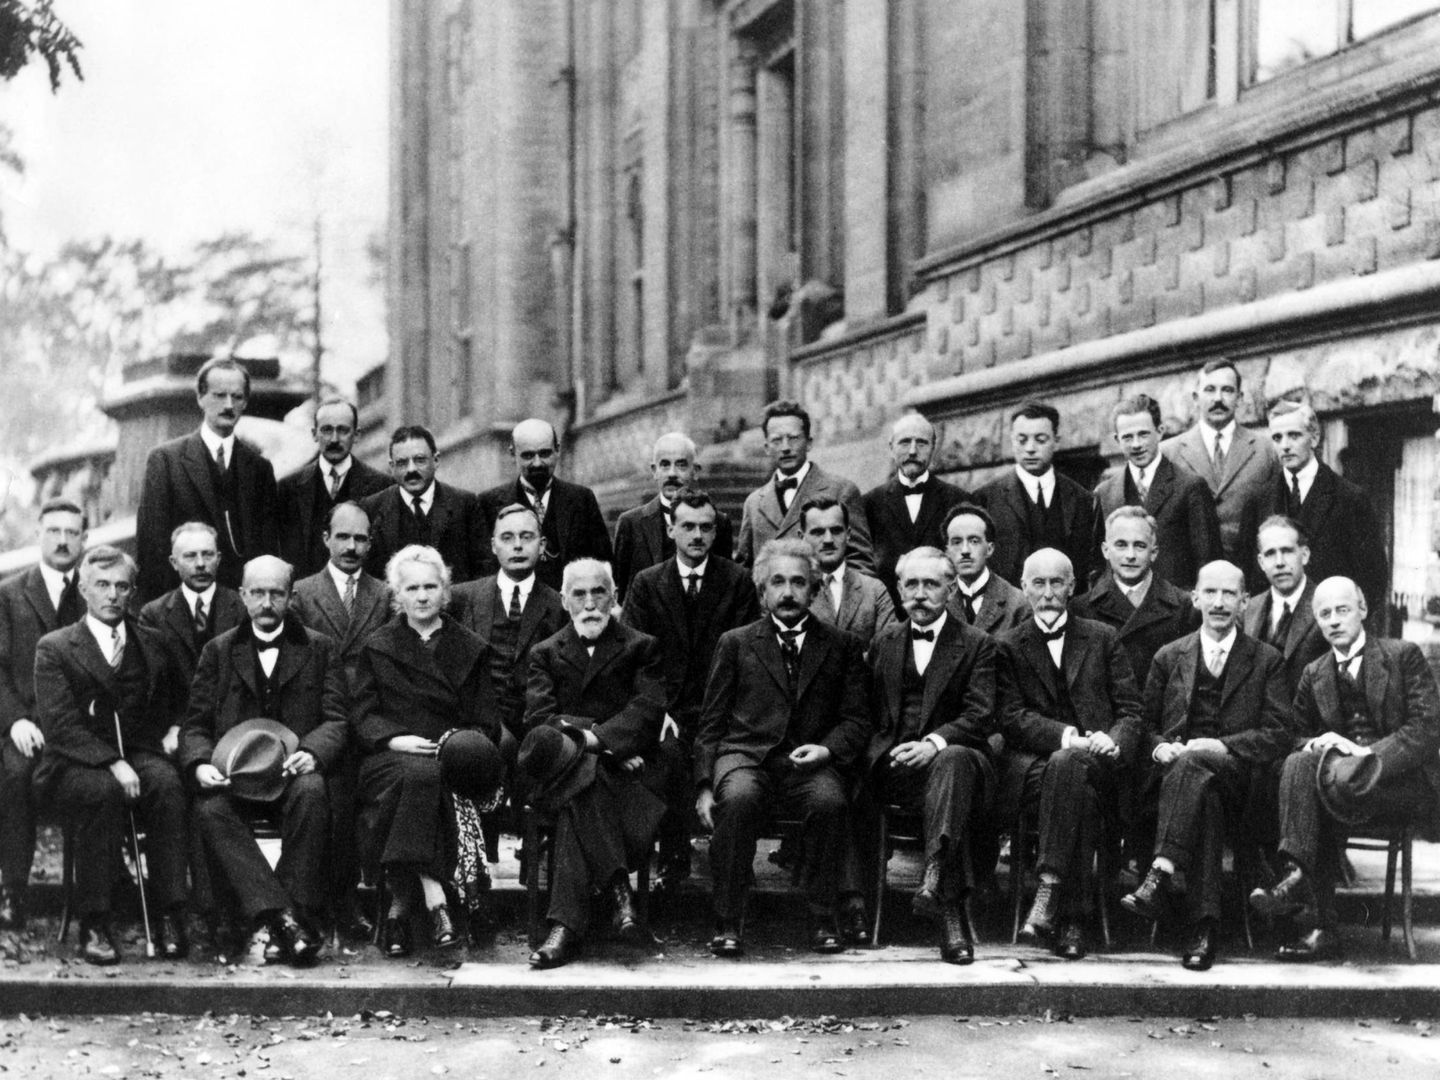 Planck (primera fila izquierda, sentado, calvo con bigote) Schrödinger (de pie, en medio con levita gris) y Einstein (primera fila, sentado en el centro) en la Conferencia de Solvay de 1927.